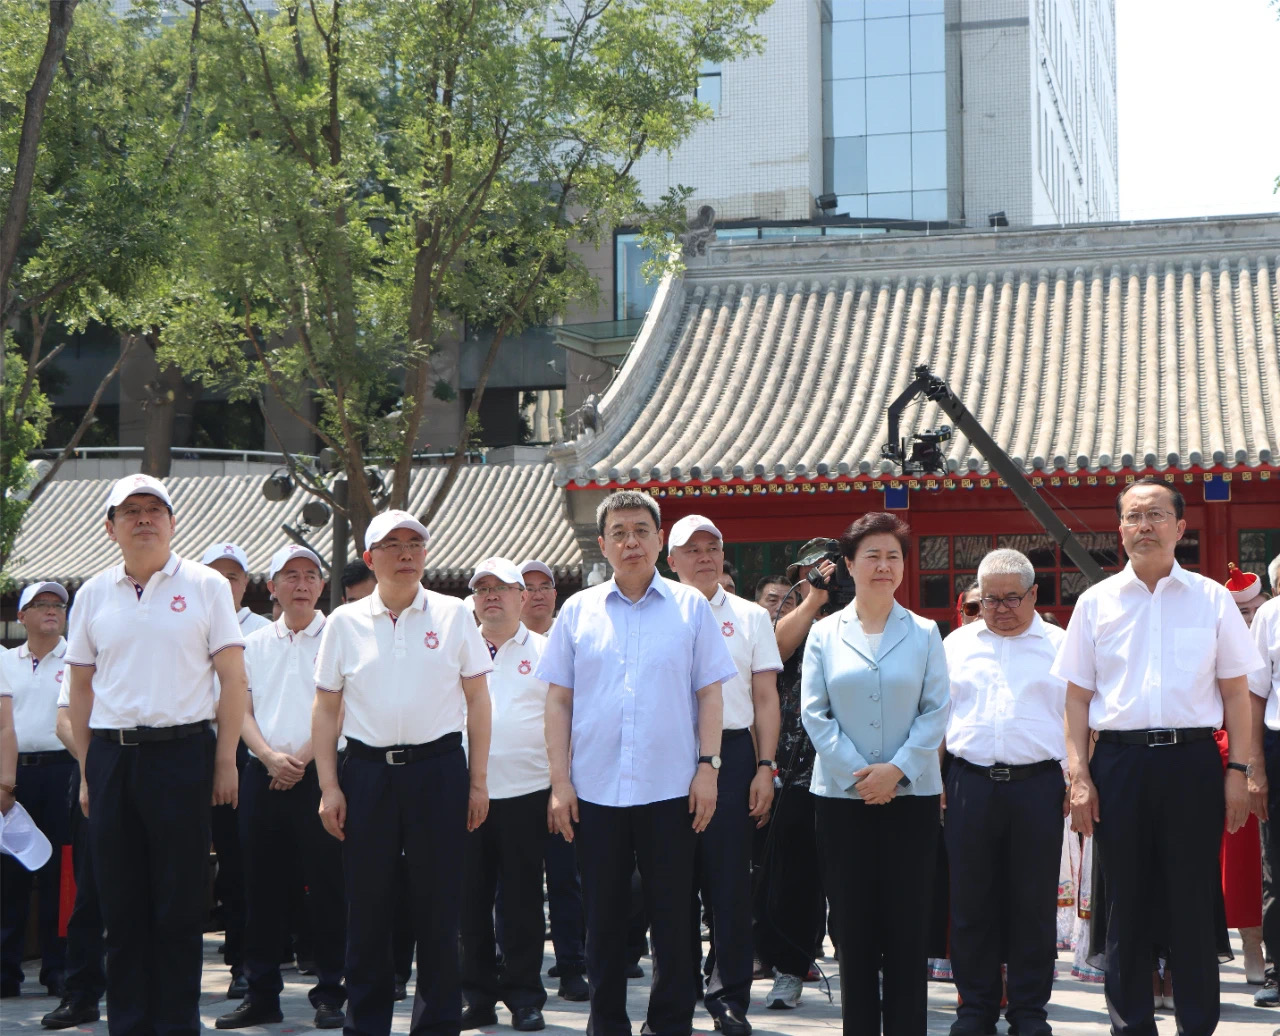 中华民族共同体体验馆第二期中华民族优秀文化体验项目举行开展仪式 时政要闻 第1张